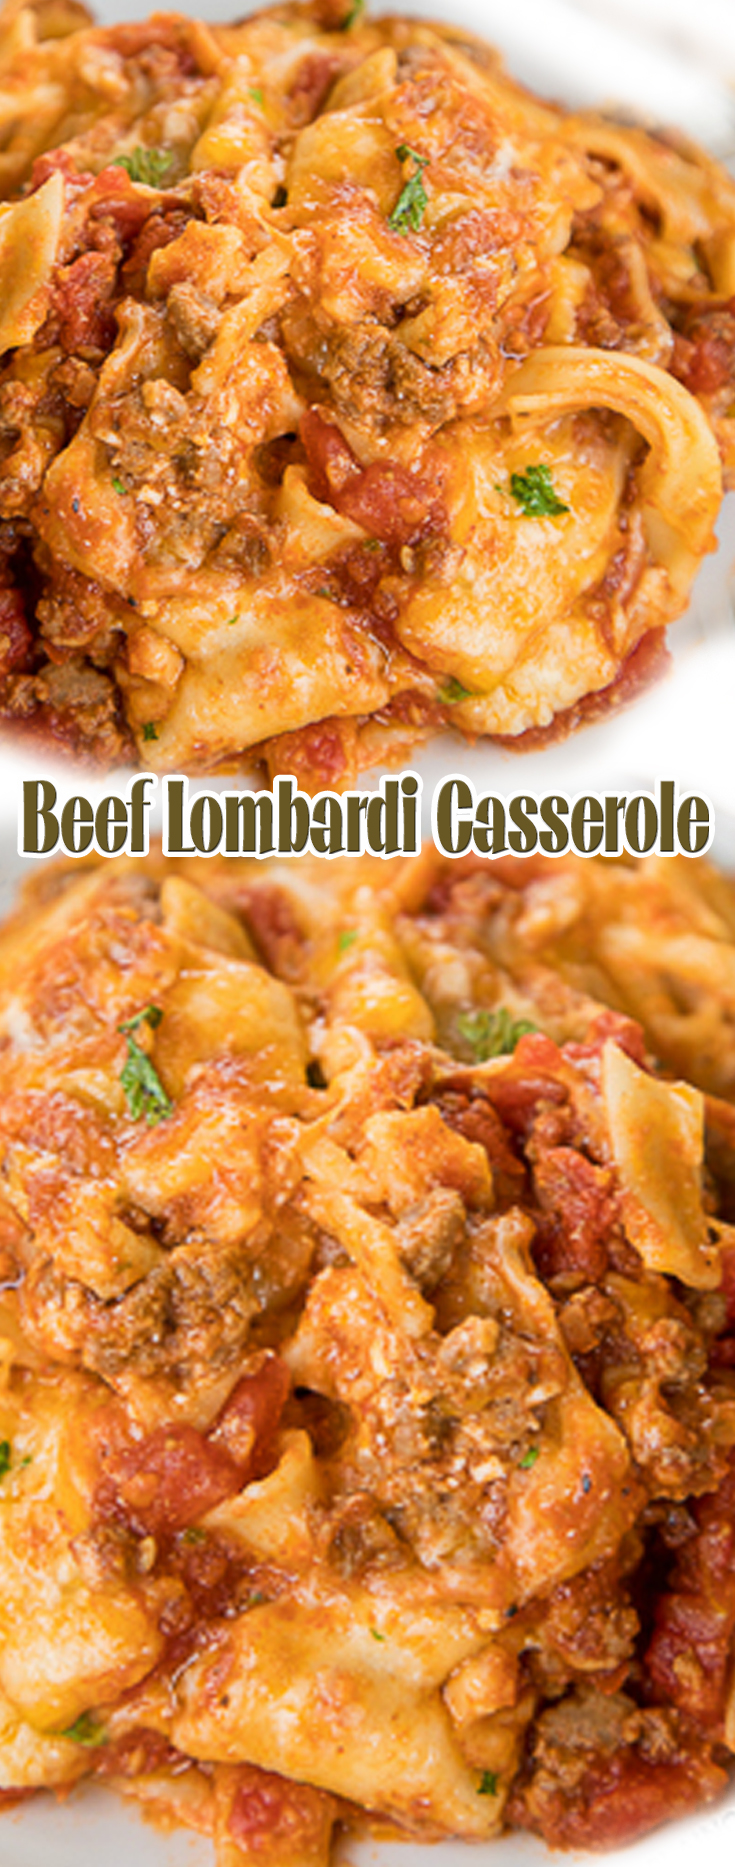 Beef Lombardi Casserole